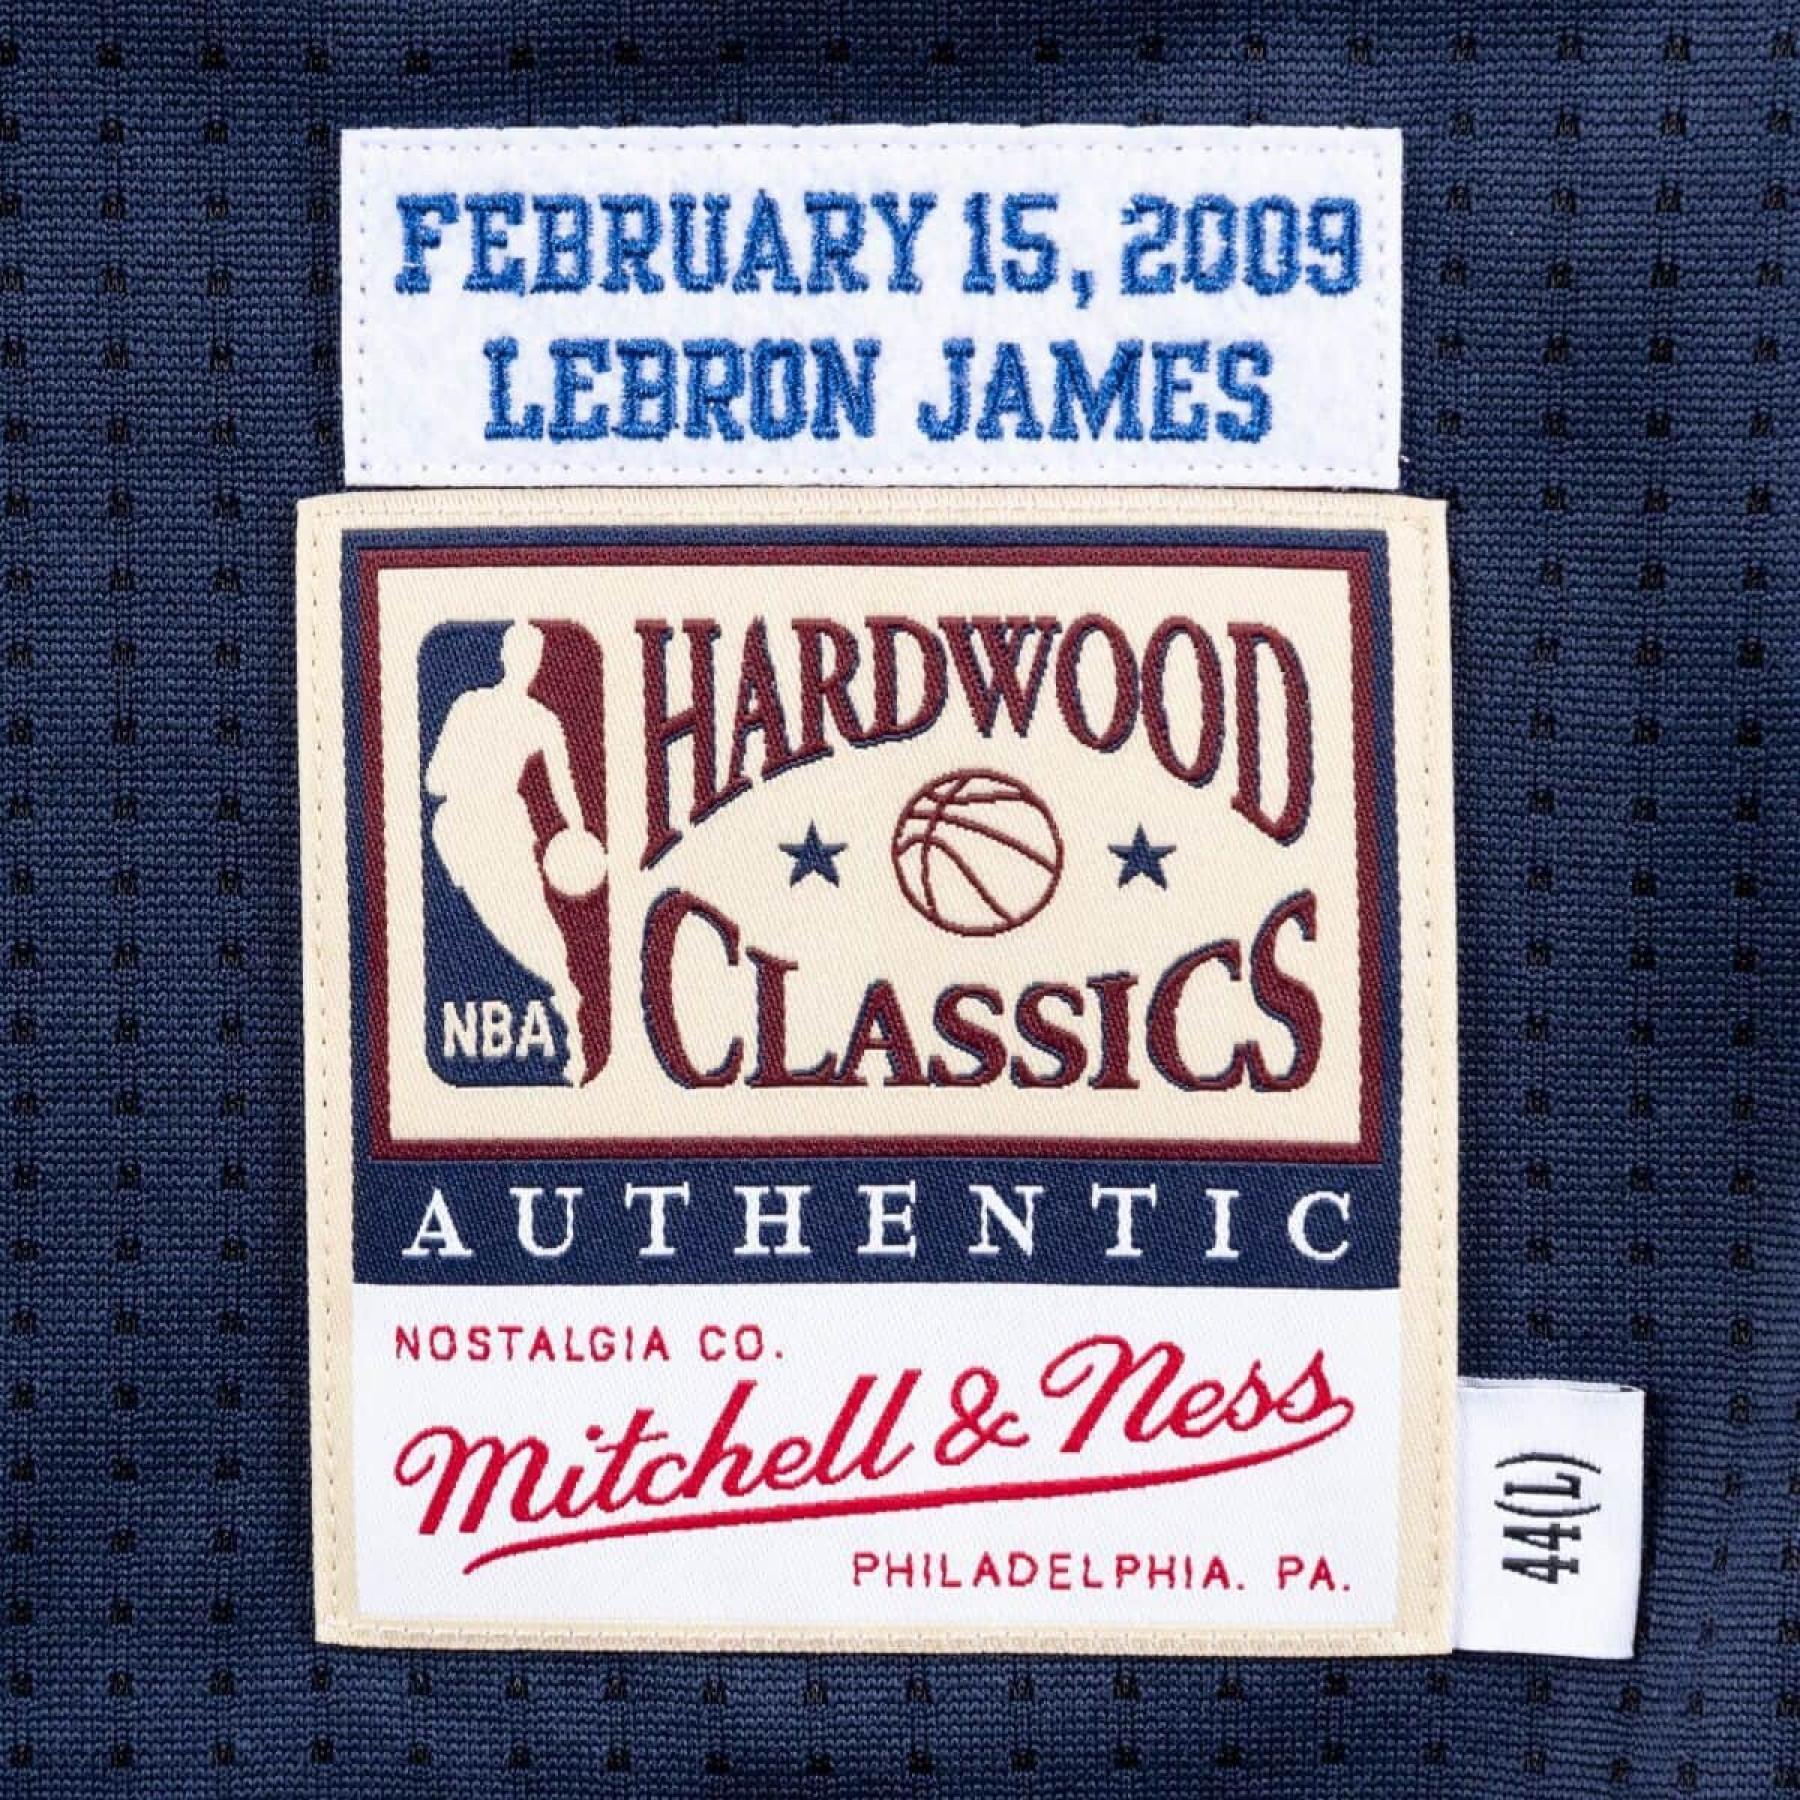 Maillot authentique NBA All Star Est Lebron James 2009